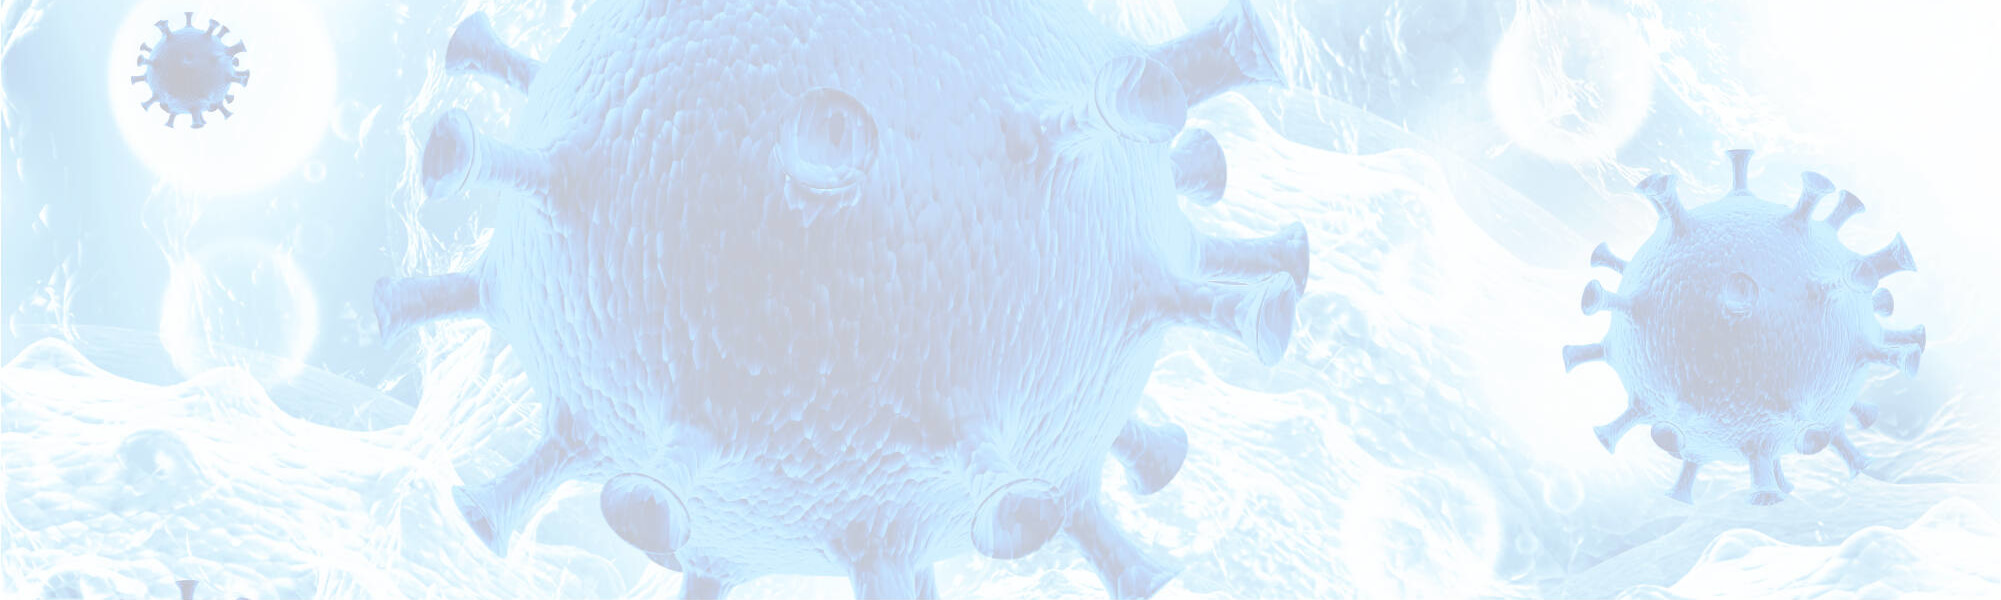 HPV: az oltás megakadályozza a rák előtti szakaszokat